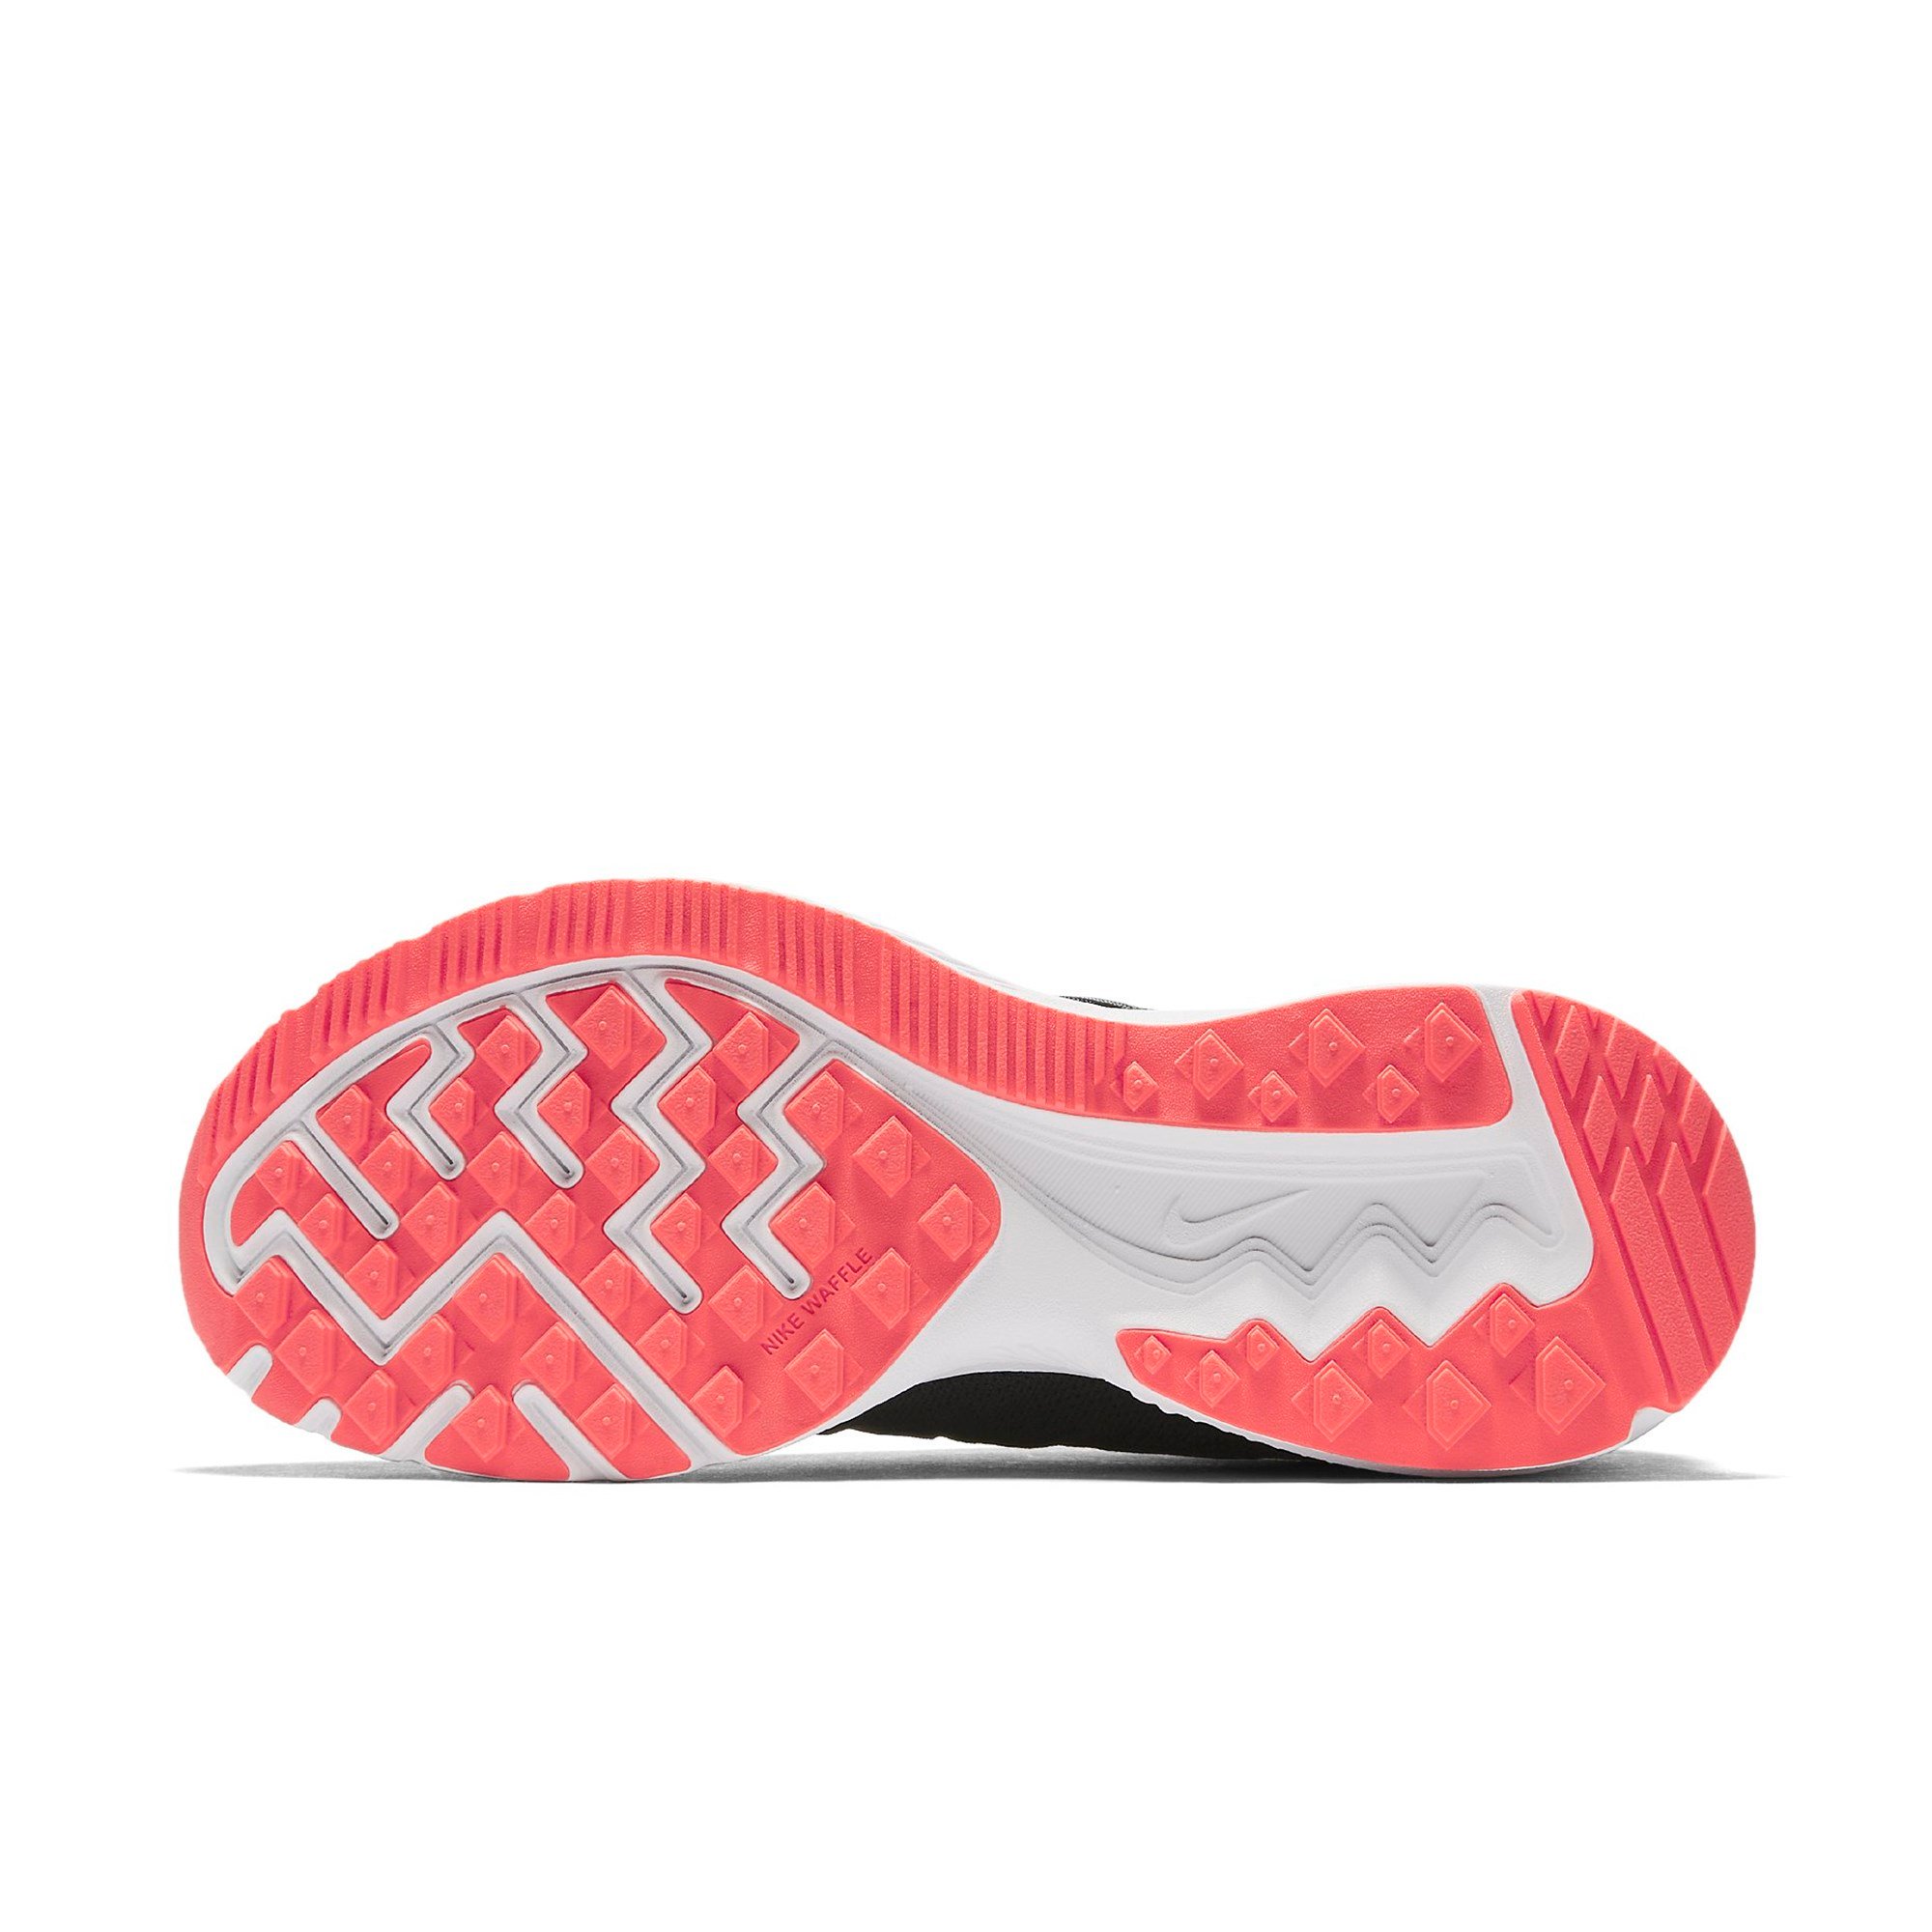 Nike Zoom Winflo 3 Bayan Spor Ayakkabı Ürün kodu: 831562-010 | Etichet Sport